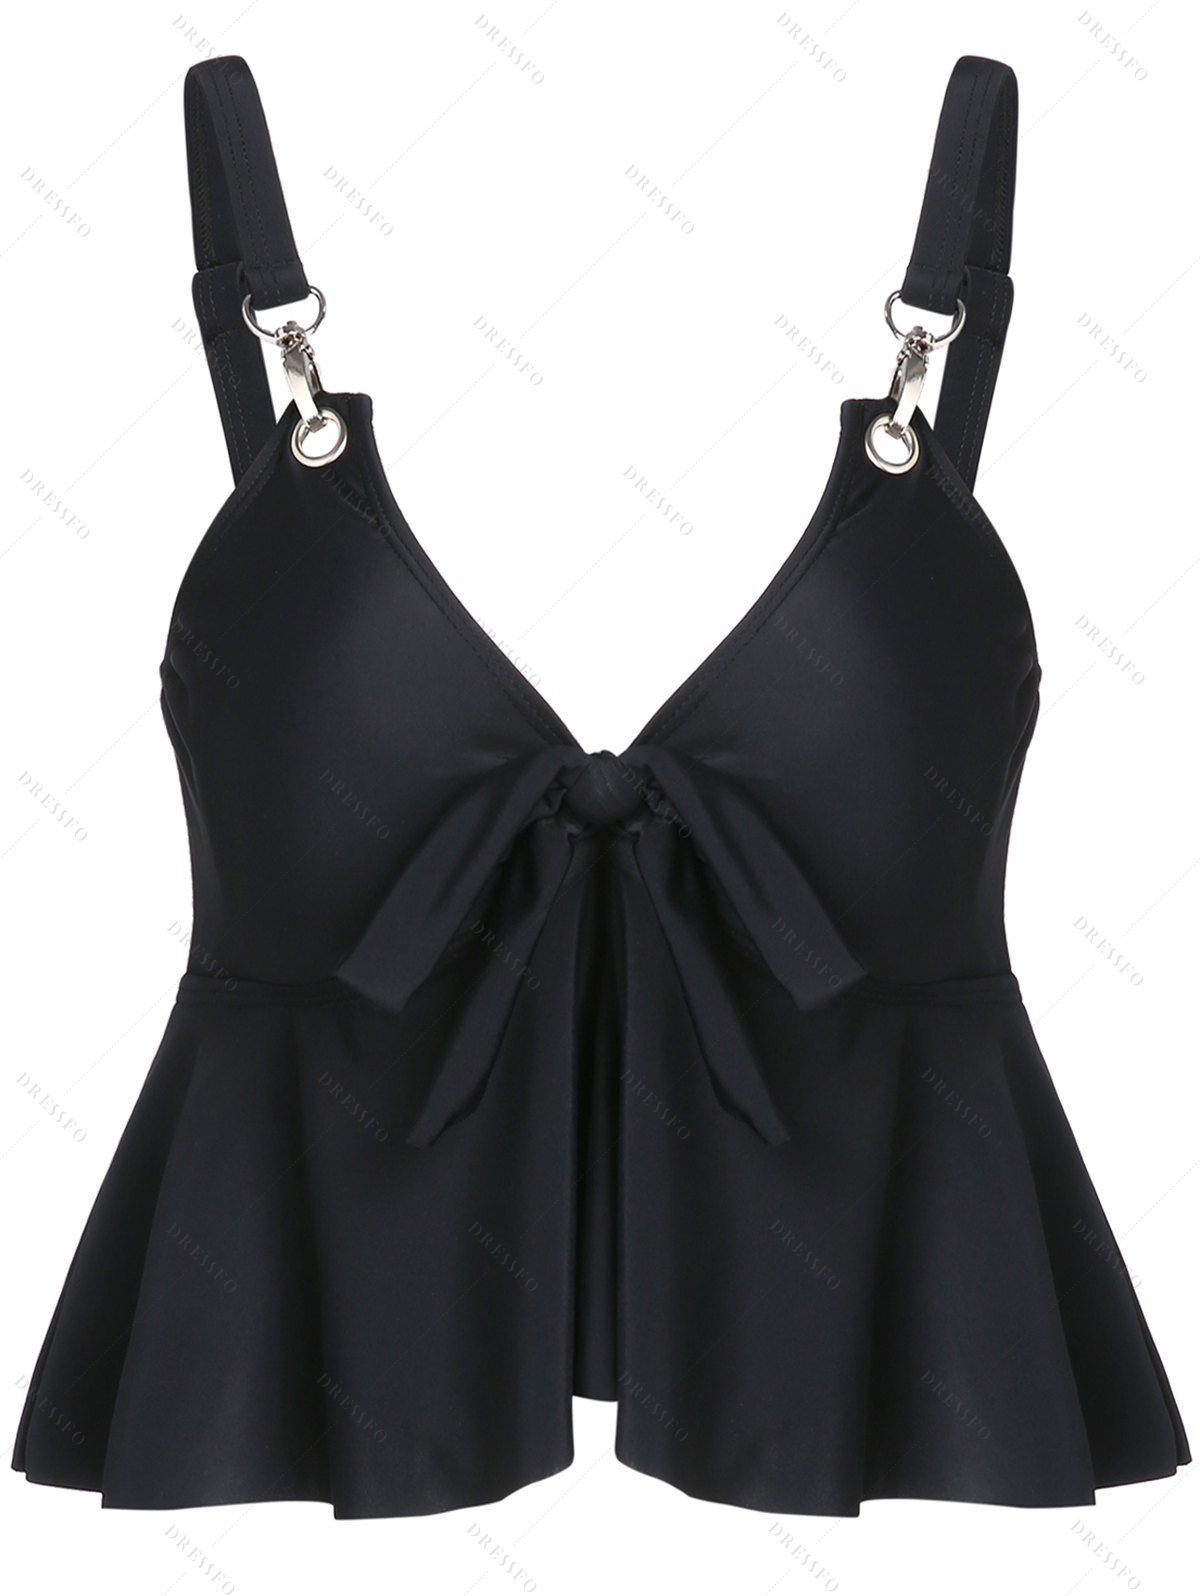 Plain Color Swimsuit Top Ruffle Bowknot Adjustable Strap V Neck Tankini Swimwear Top - BLACK M